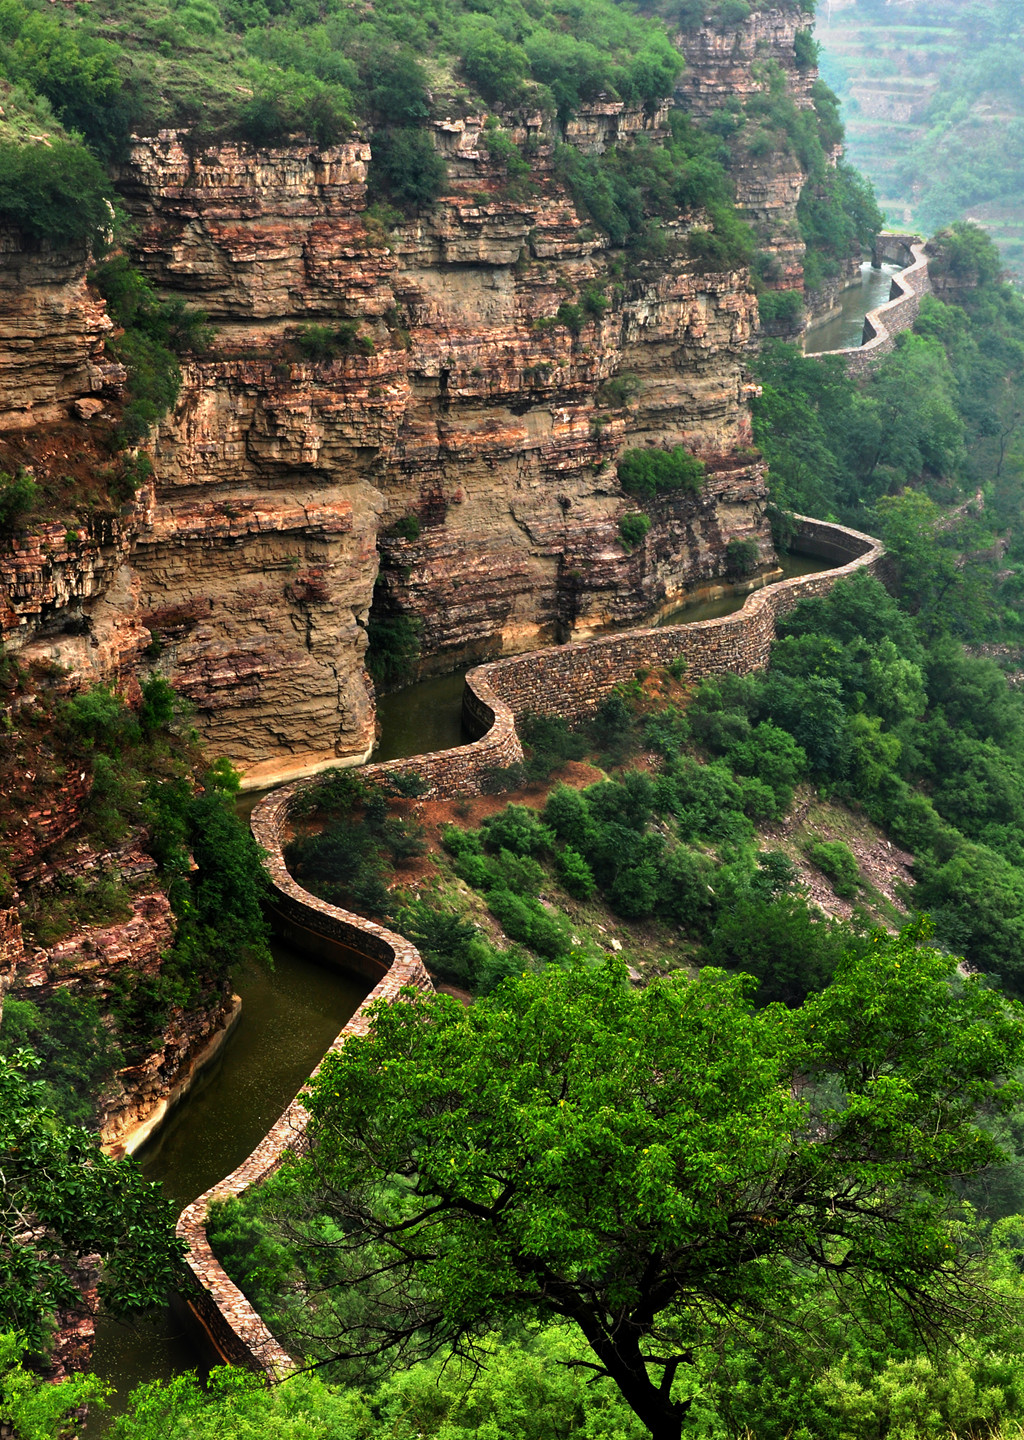 林州红旗渠,在悬崖峭壁上开凿的水利工程,令人震撼